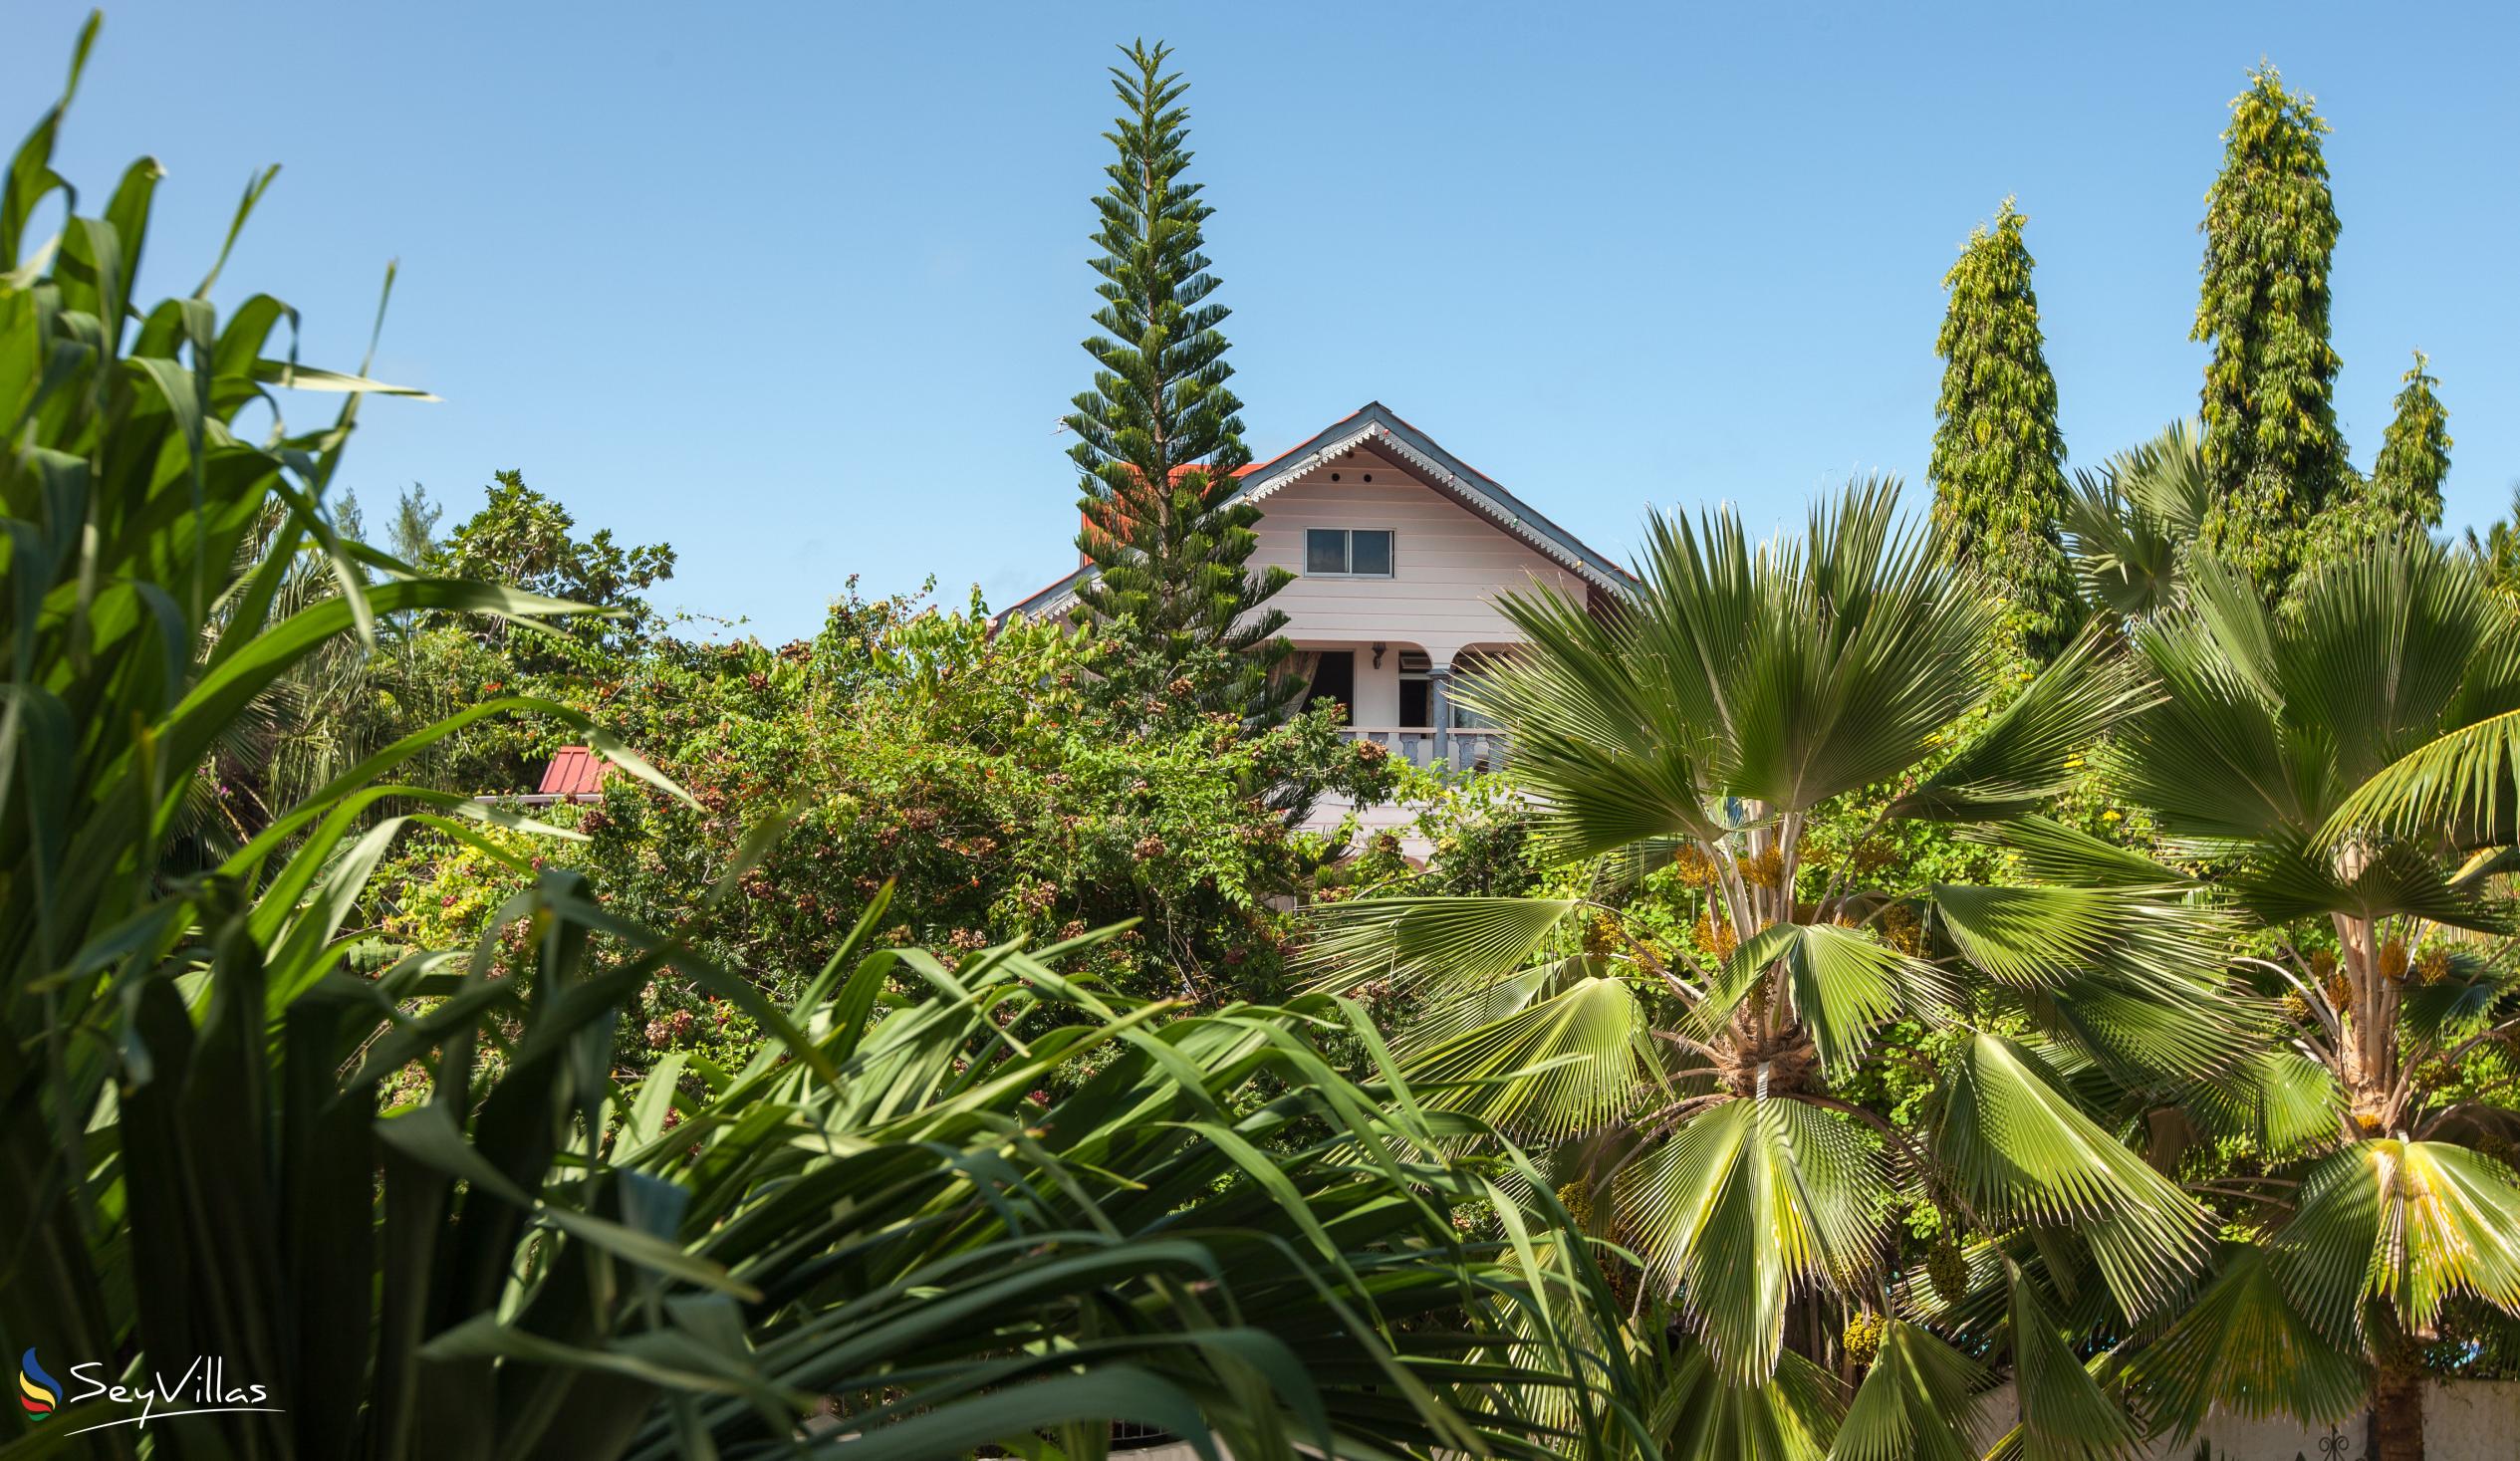 Foto 10: Chateau Sans Souci - Aussenbereich - Praslin (Seychellen)